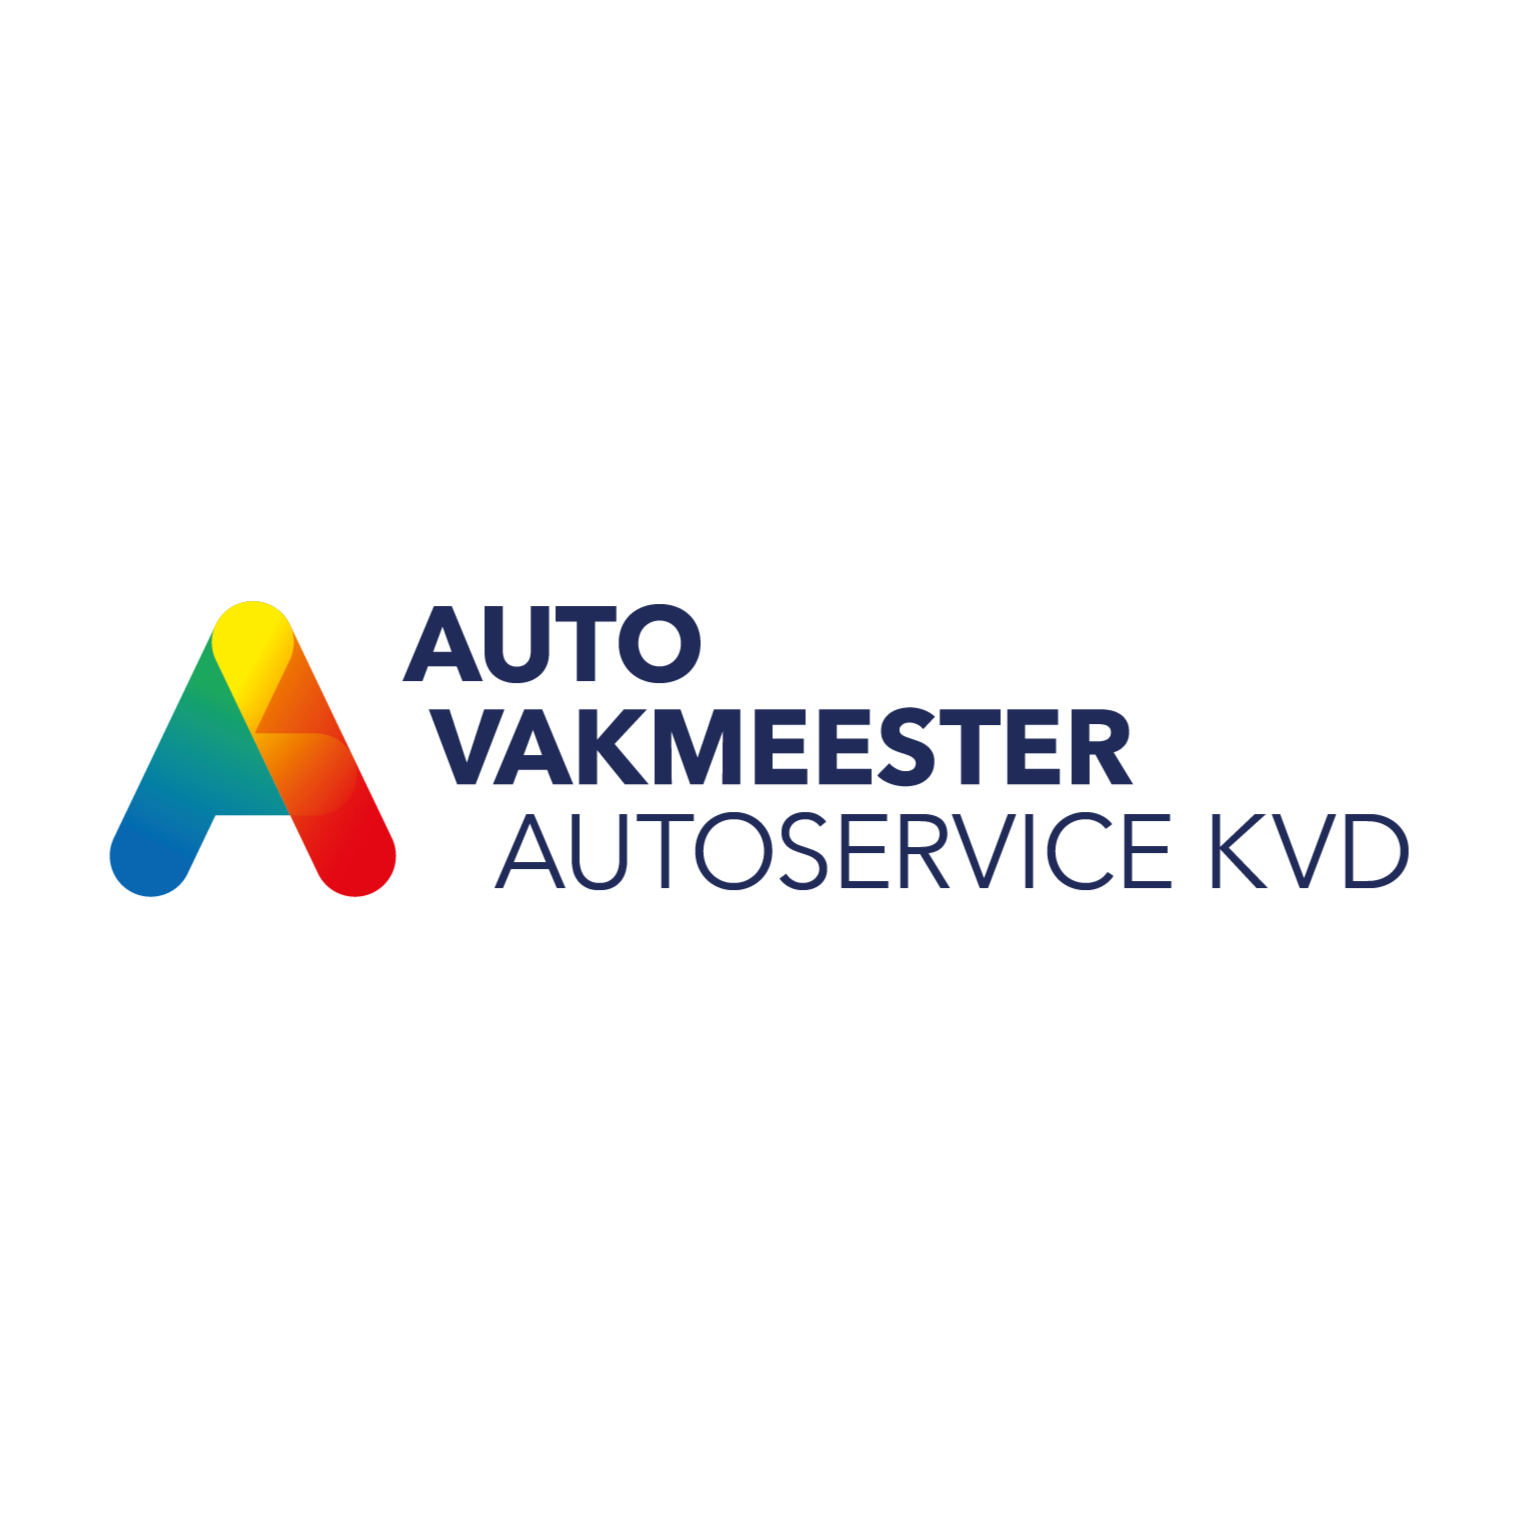 Autoservice KVD Schinnen Autovakmeester Logo